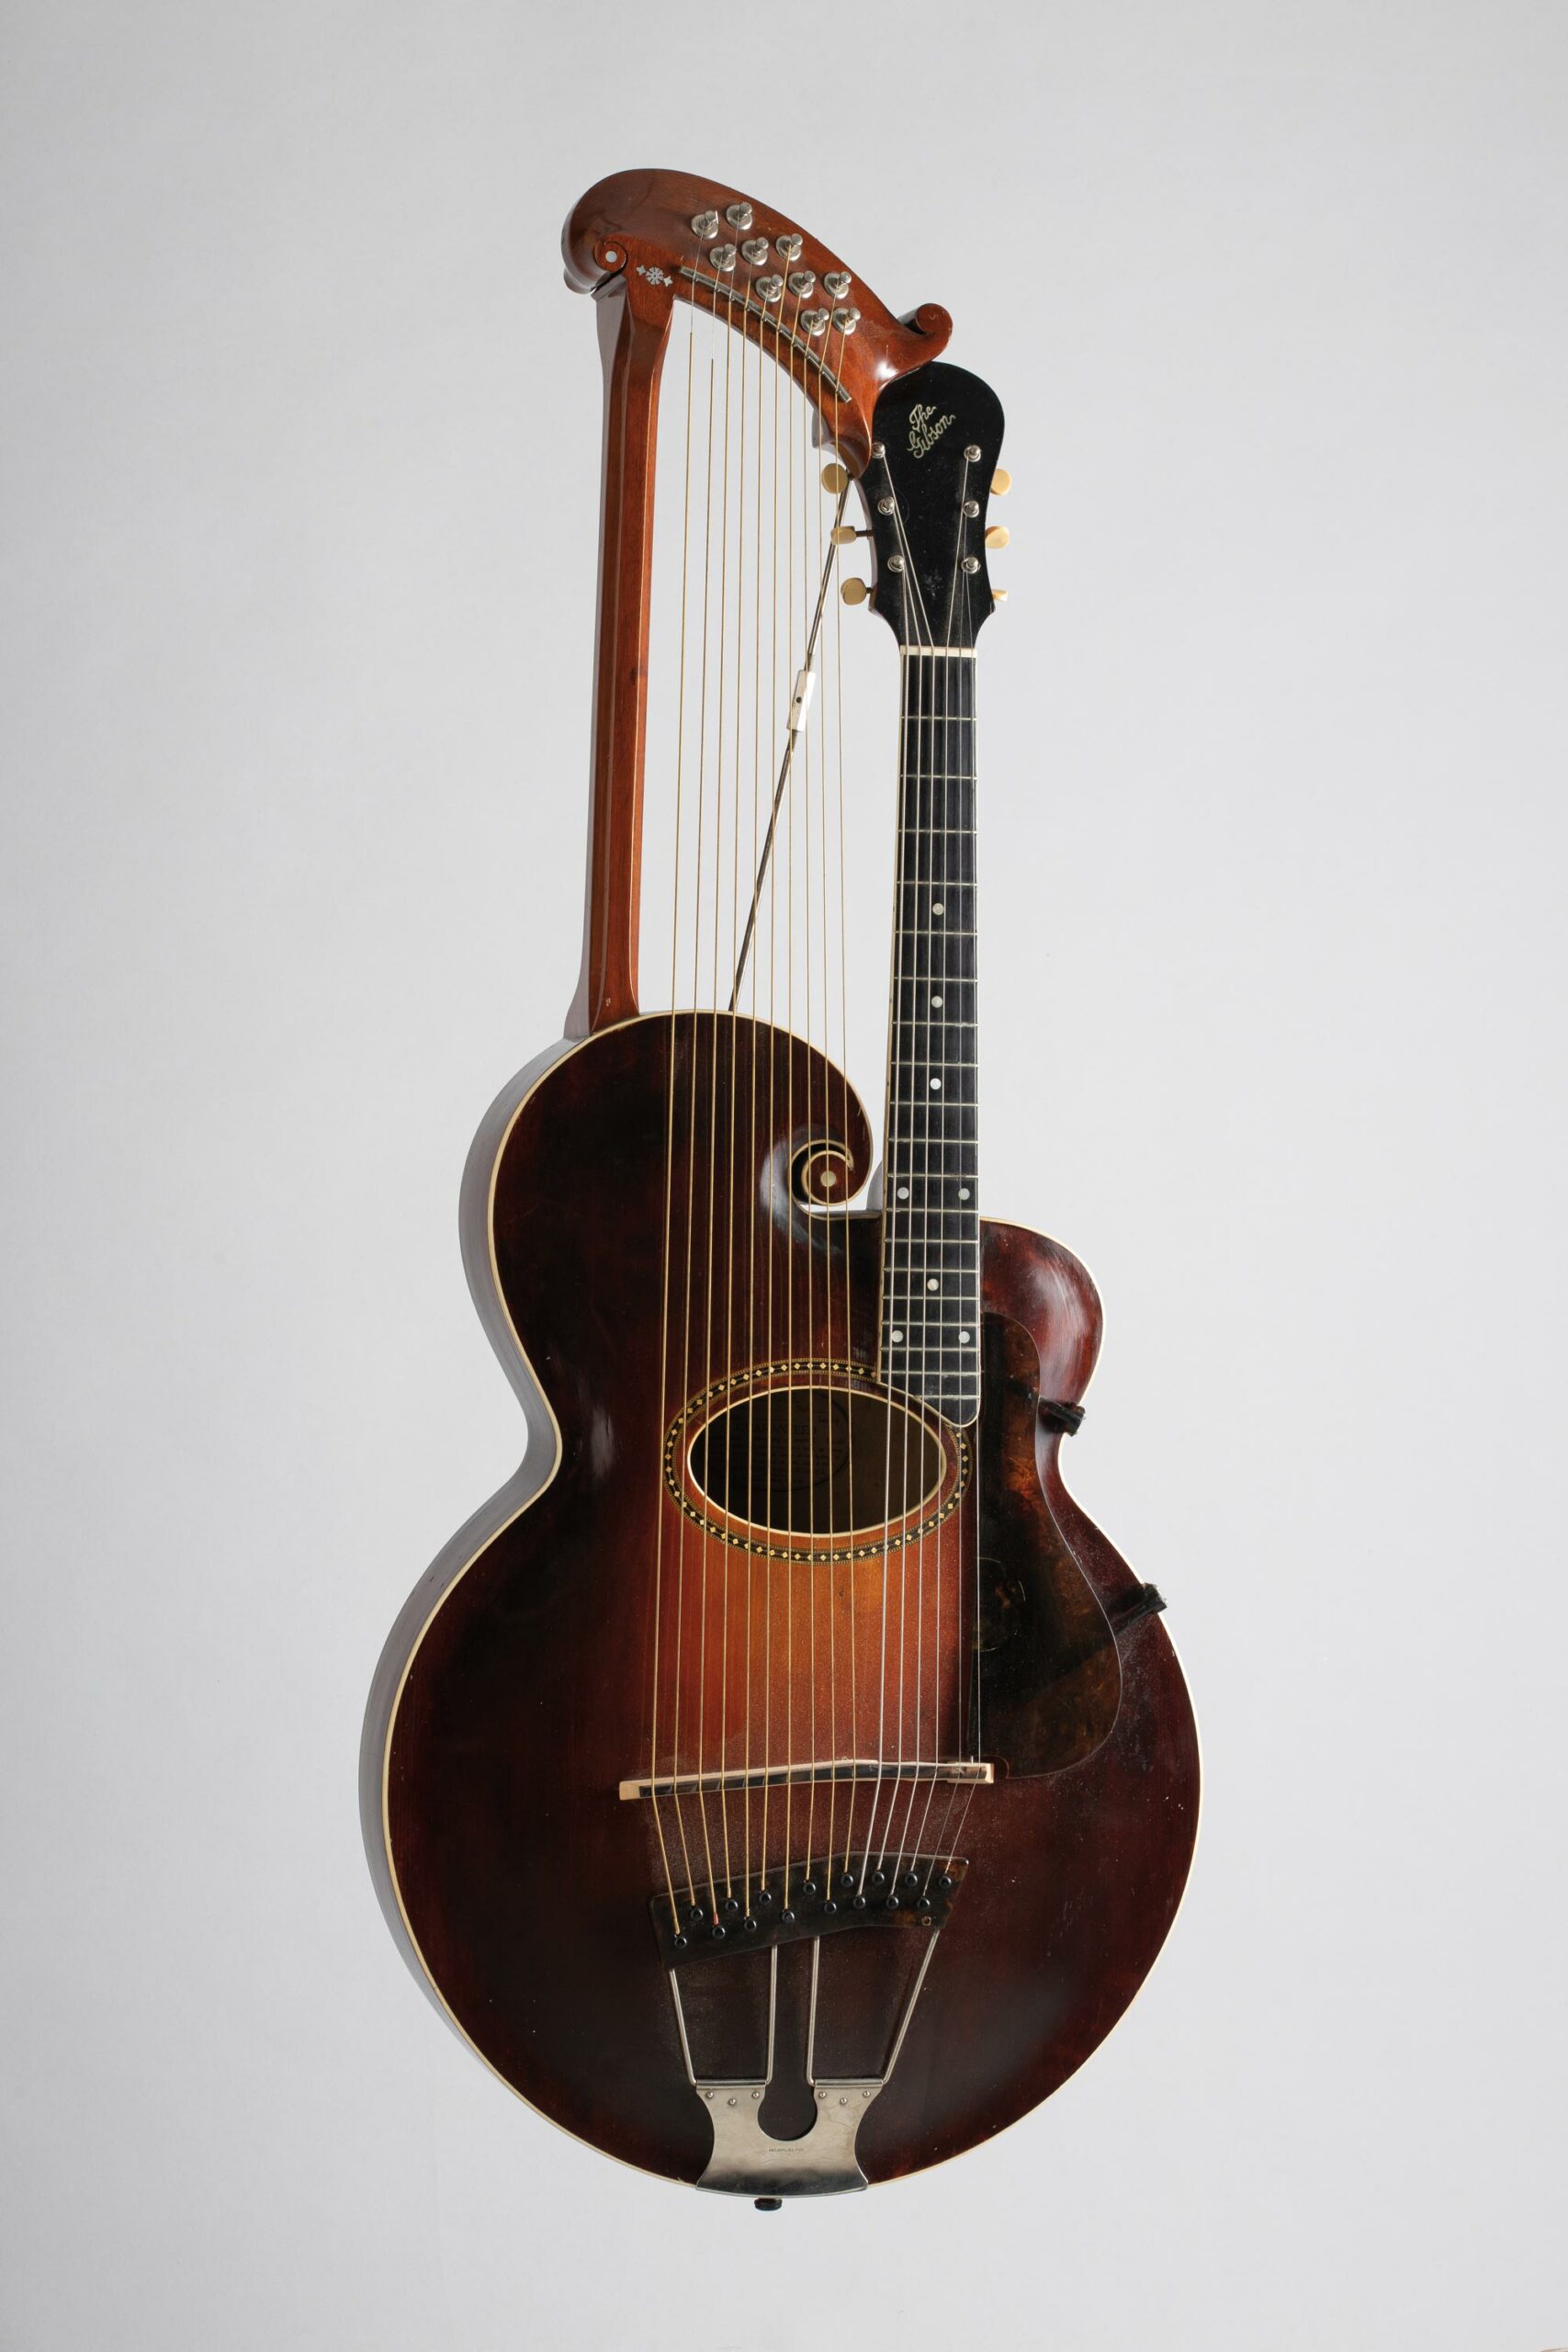 Guitare harpe de marque GIBSON modèle U Collection Palm Guitars Instrument mis en vente par Vichy Enchères le 5 novembre 2022 © C. Darbelet